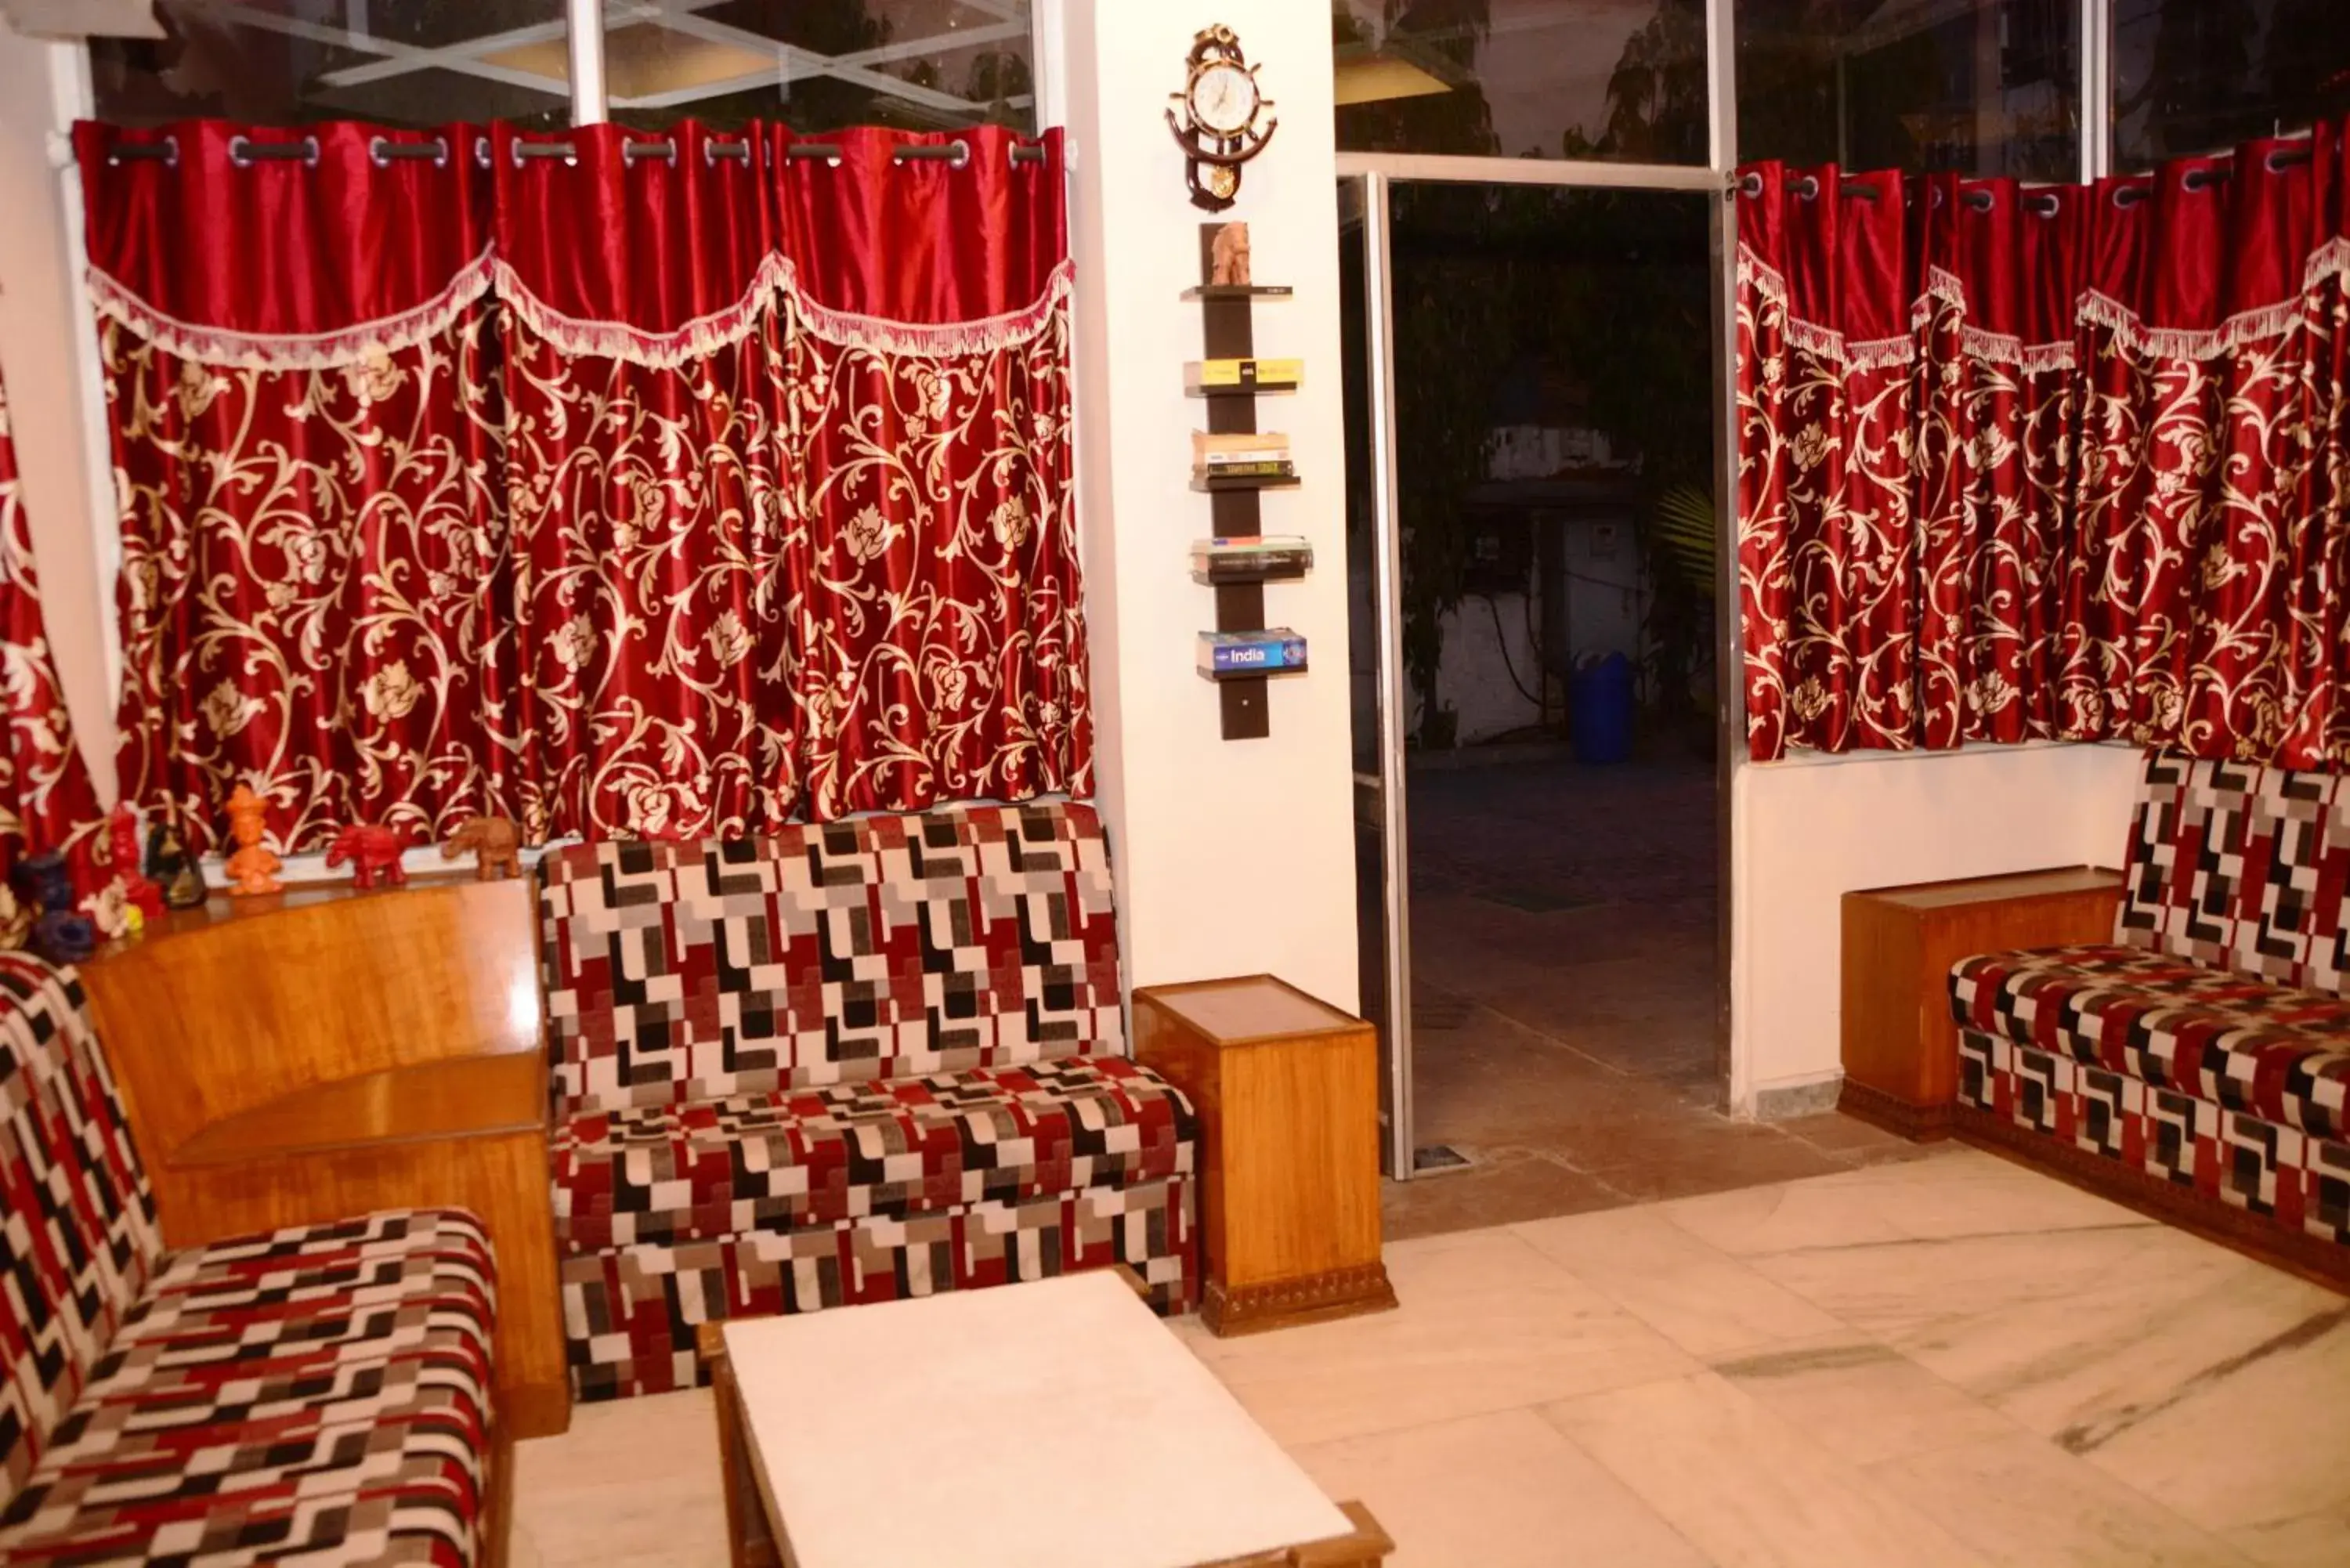 Lobby or reception in Hotel Sugandh Retreat